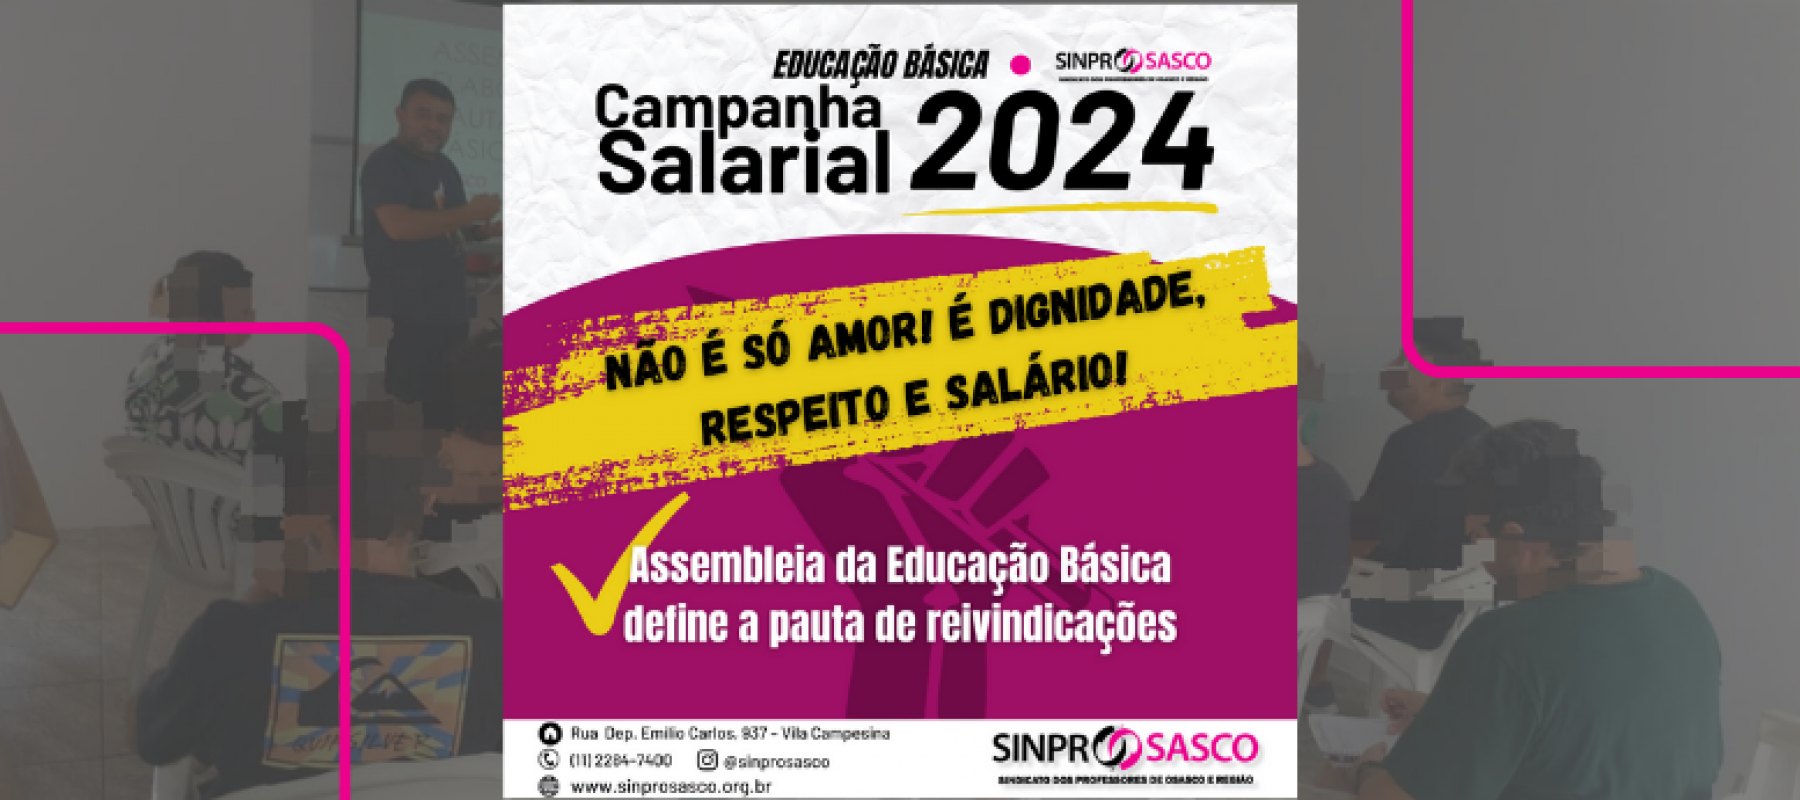 EDUCAÇÃO BÁSICA | Assembleia define pauta de reivindicações da Campanha Salarial 2024